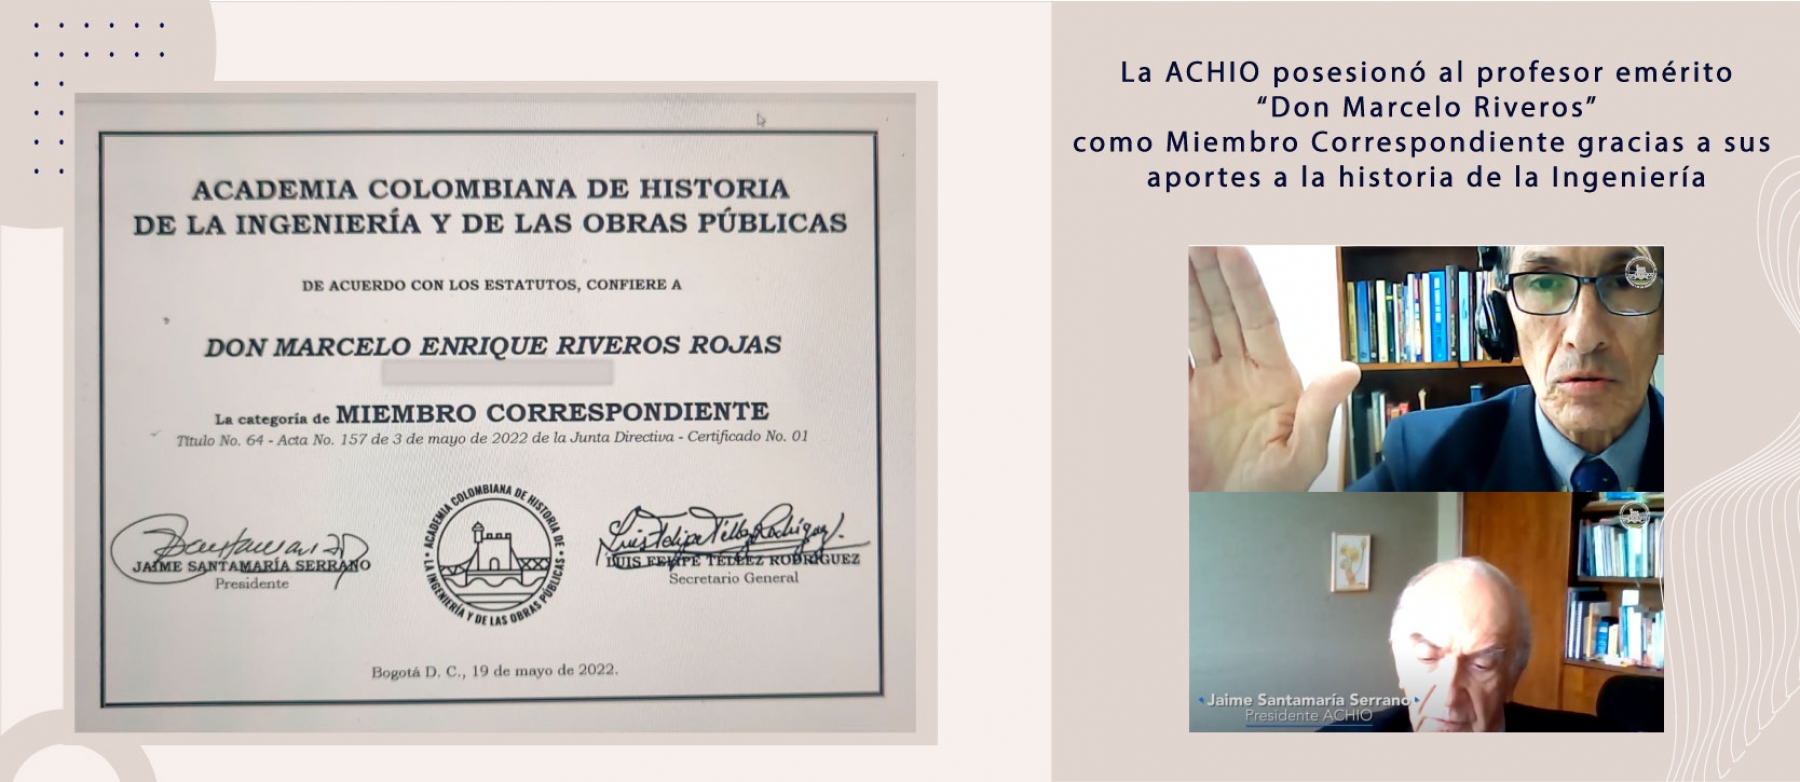 La ACHIO posesionó al profesor emérito “Don Marcelo Riveros” como Miembro Correspondiente, gracias a sus aportes a la historia de la Ingeniería